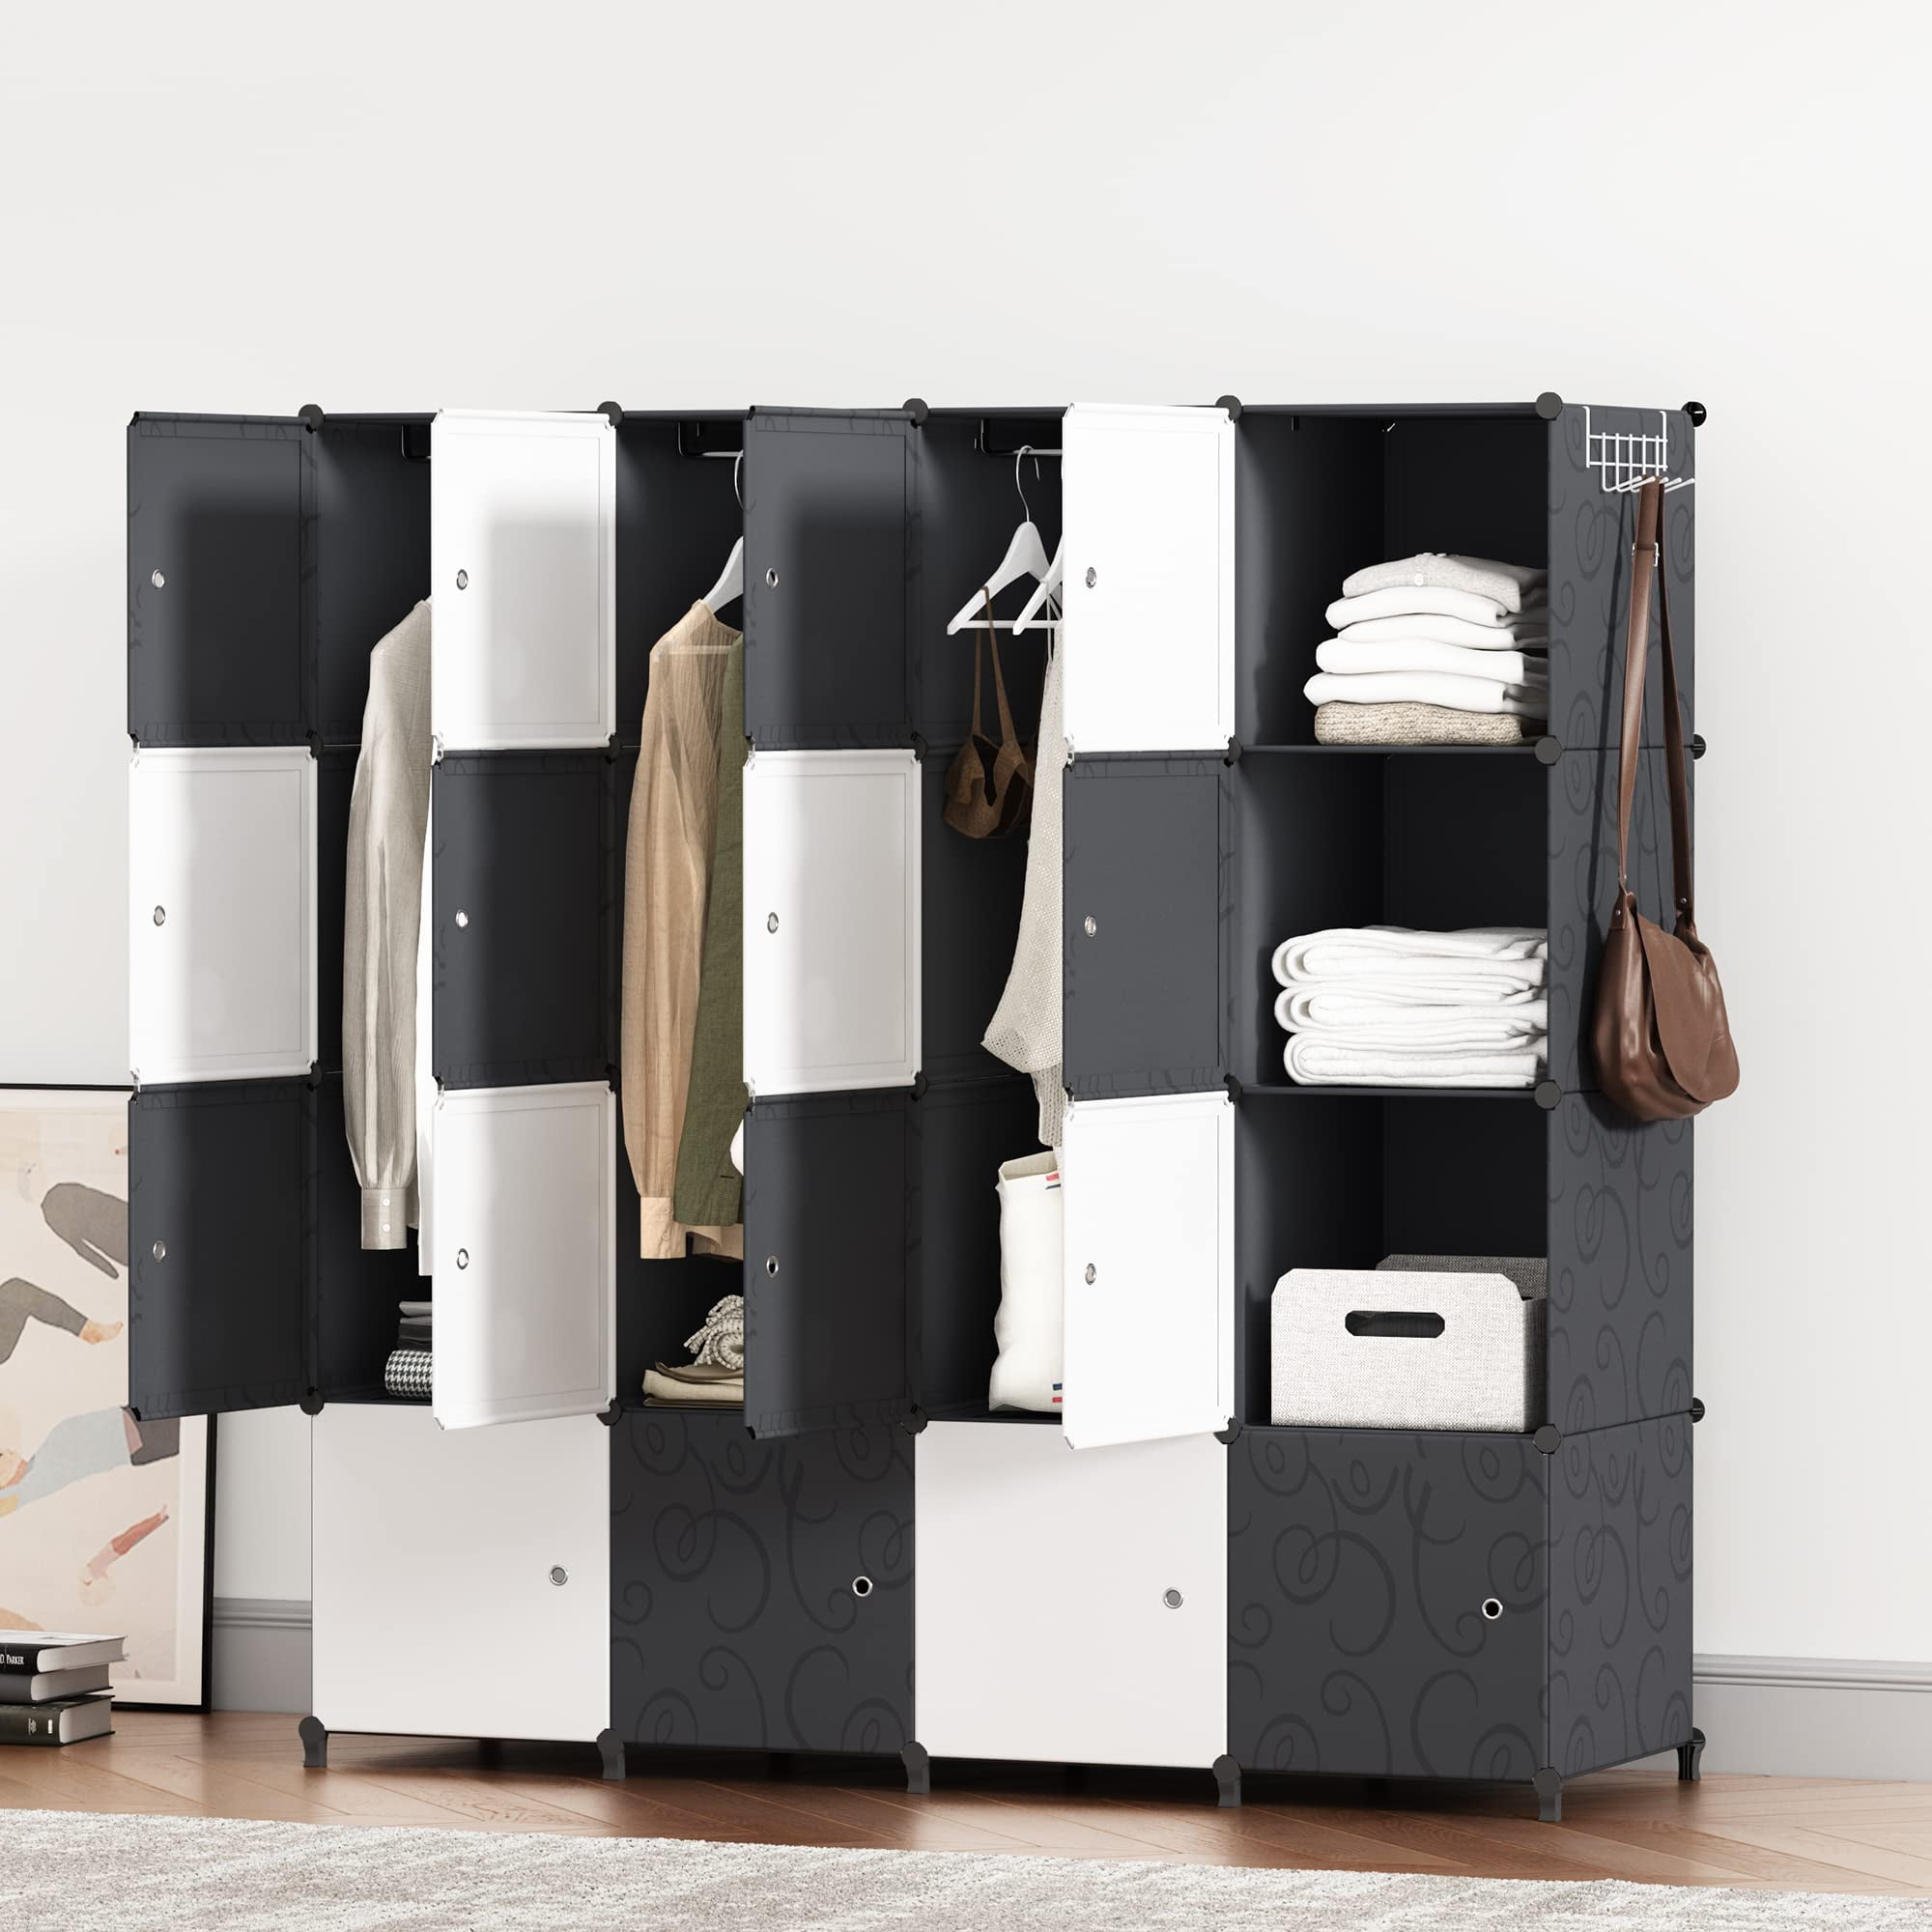 セール中/新品 Cube Closet Organizers And Storage Includes All Bins Easy To  Assemble Unit With Drawers Room Organizer For Clothes